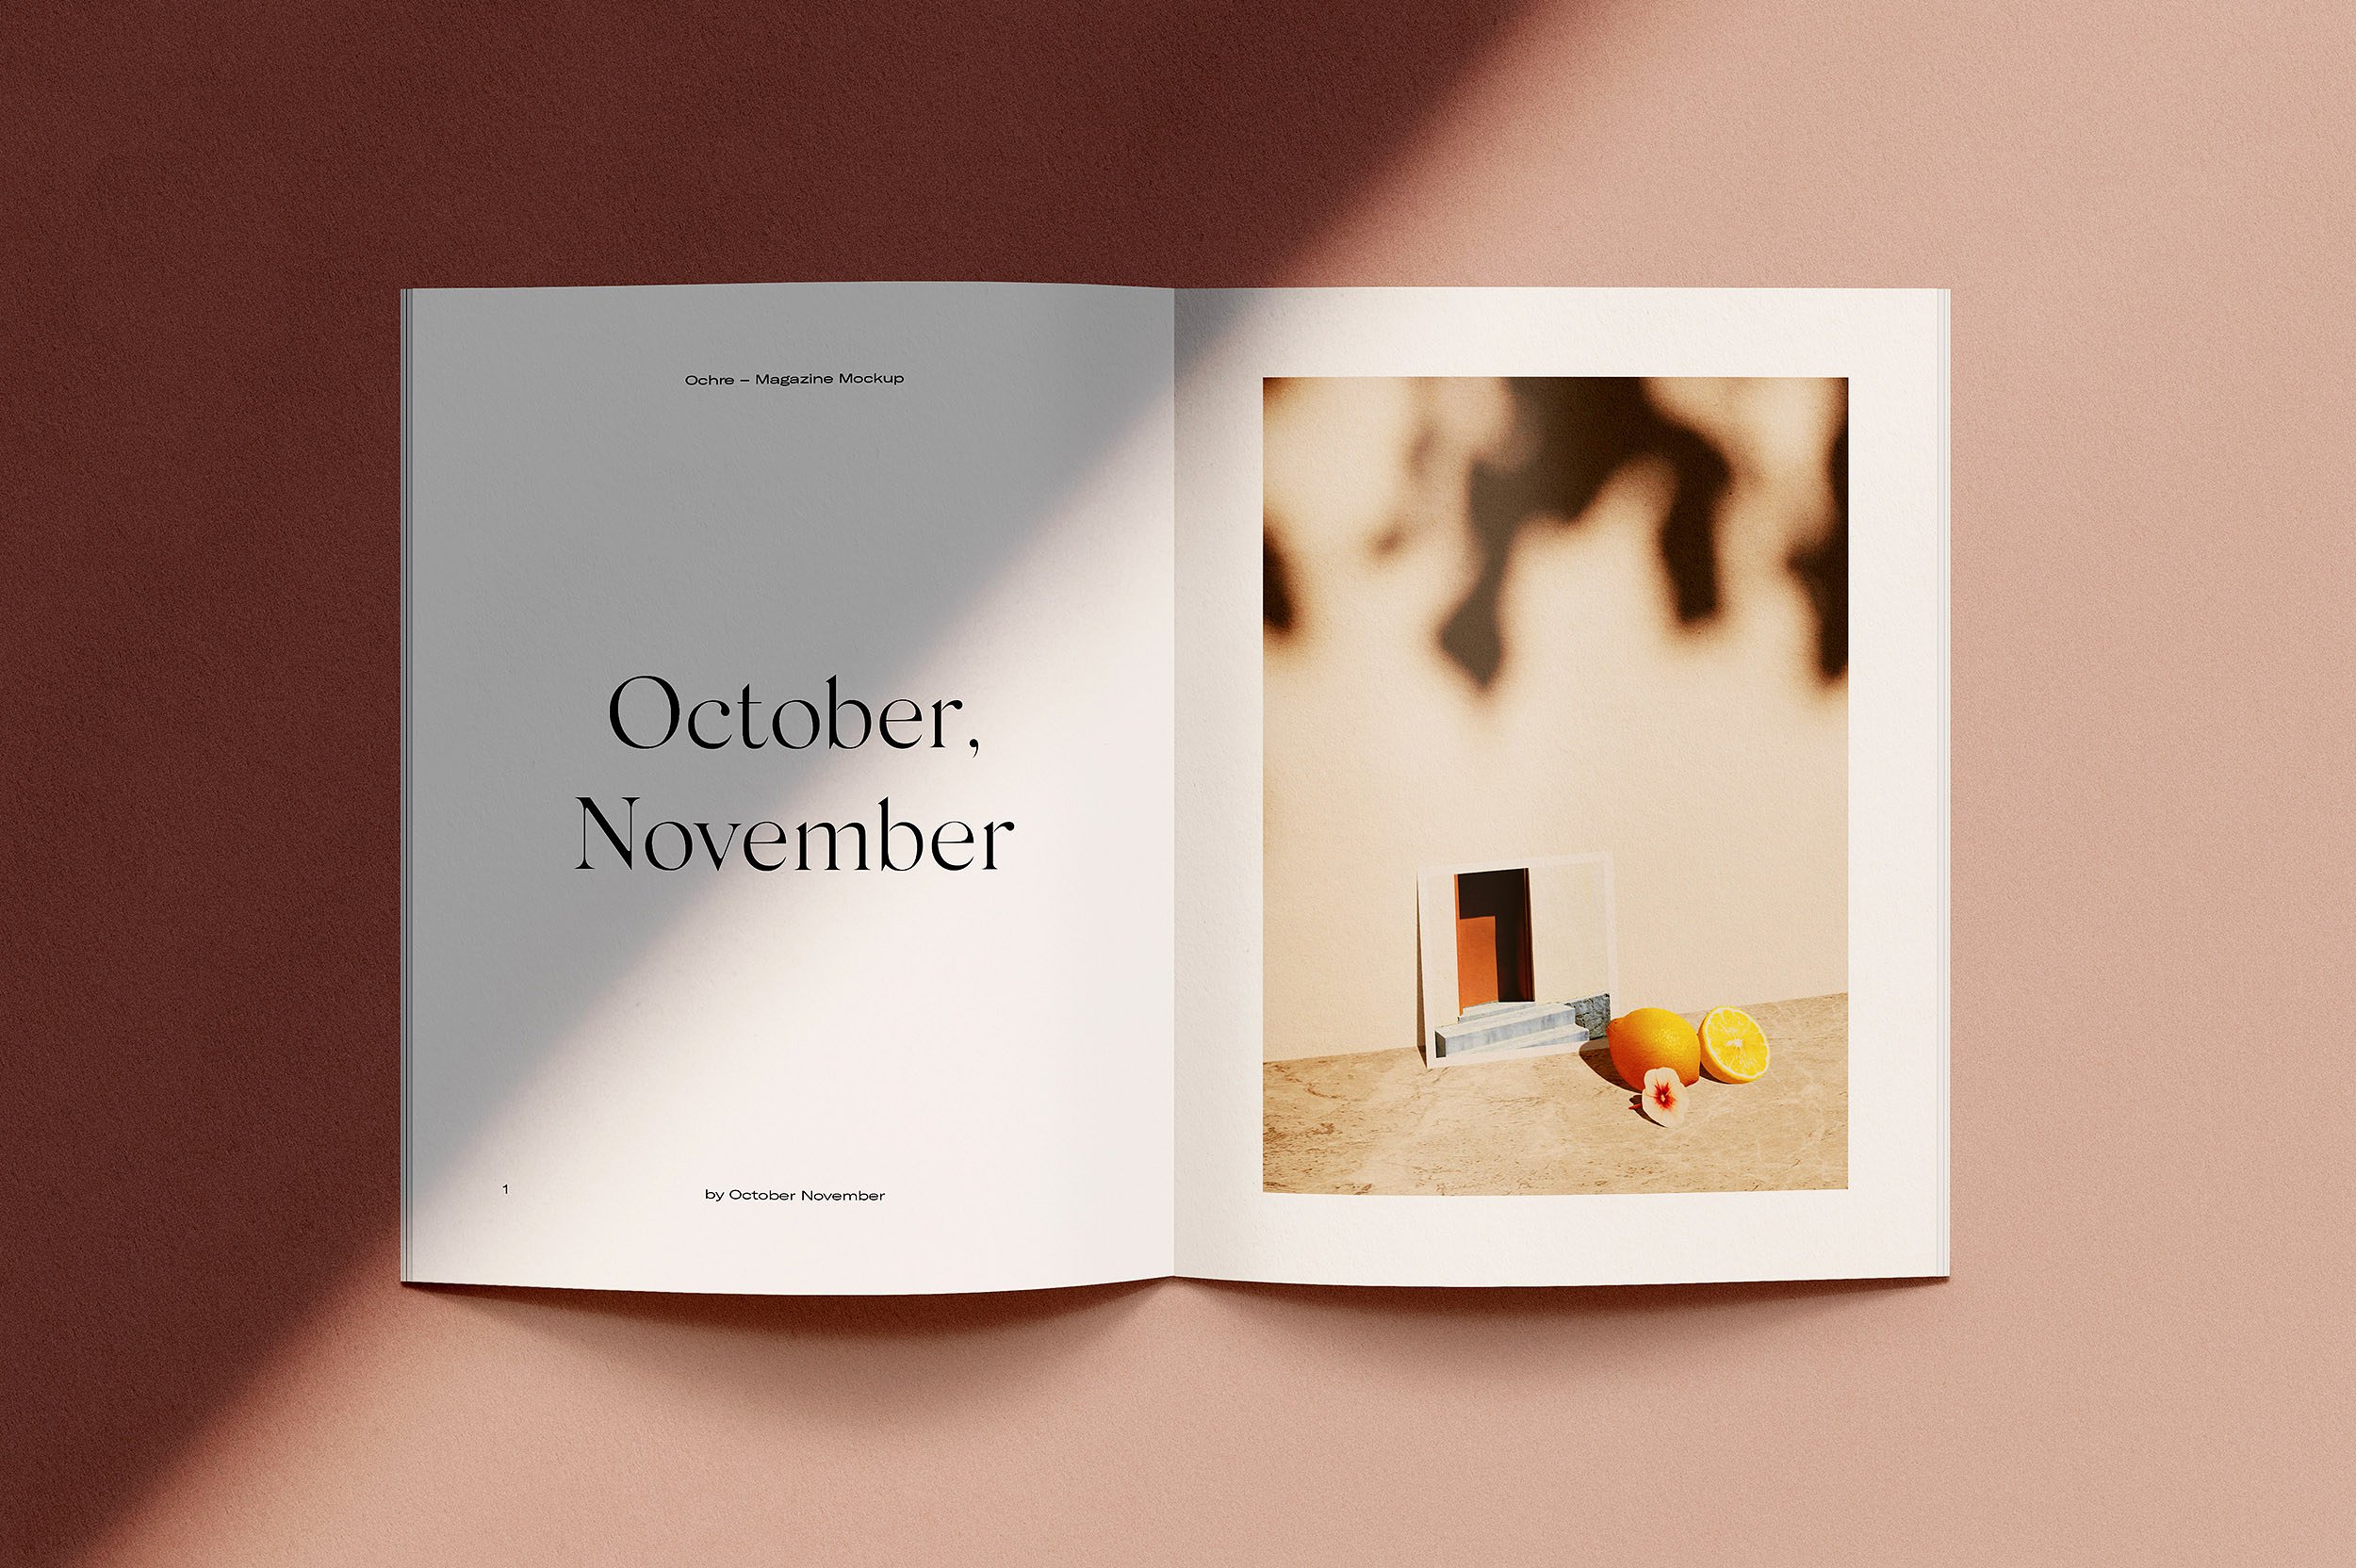 Ochre – Magazine Mockups by October November